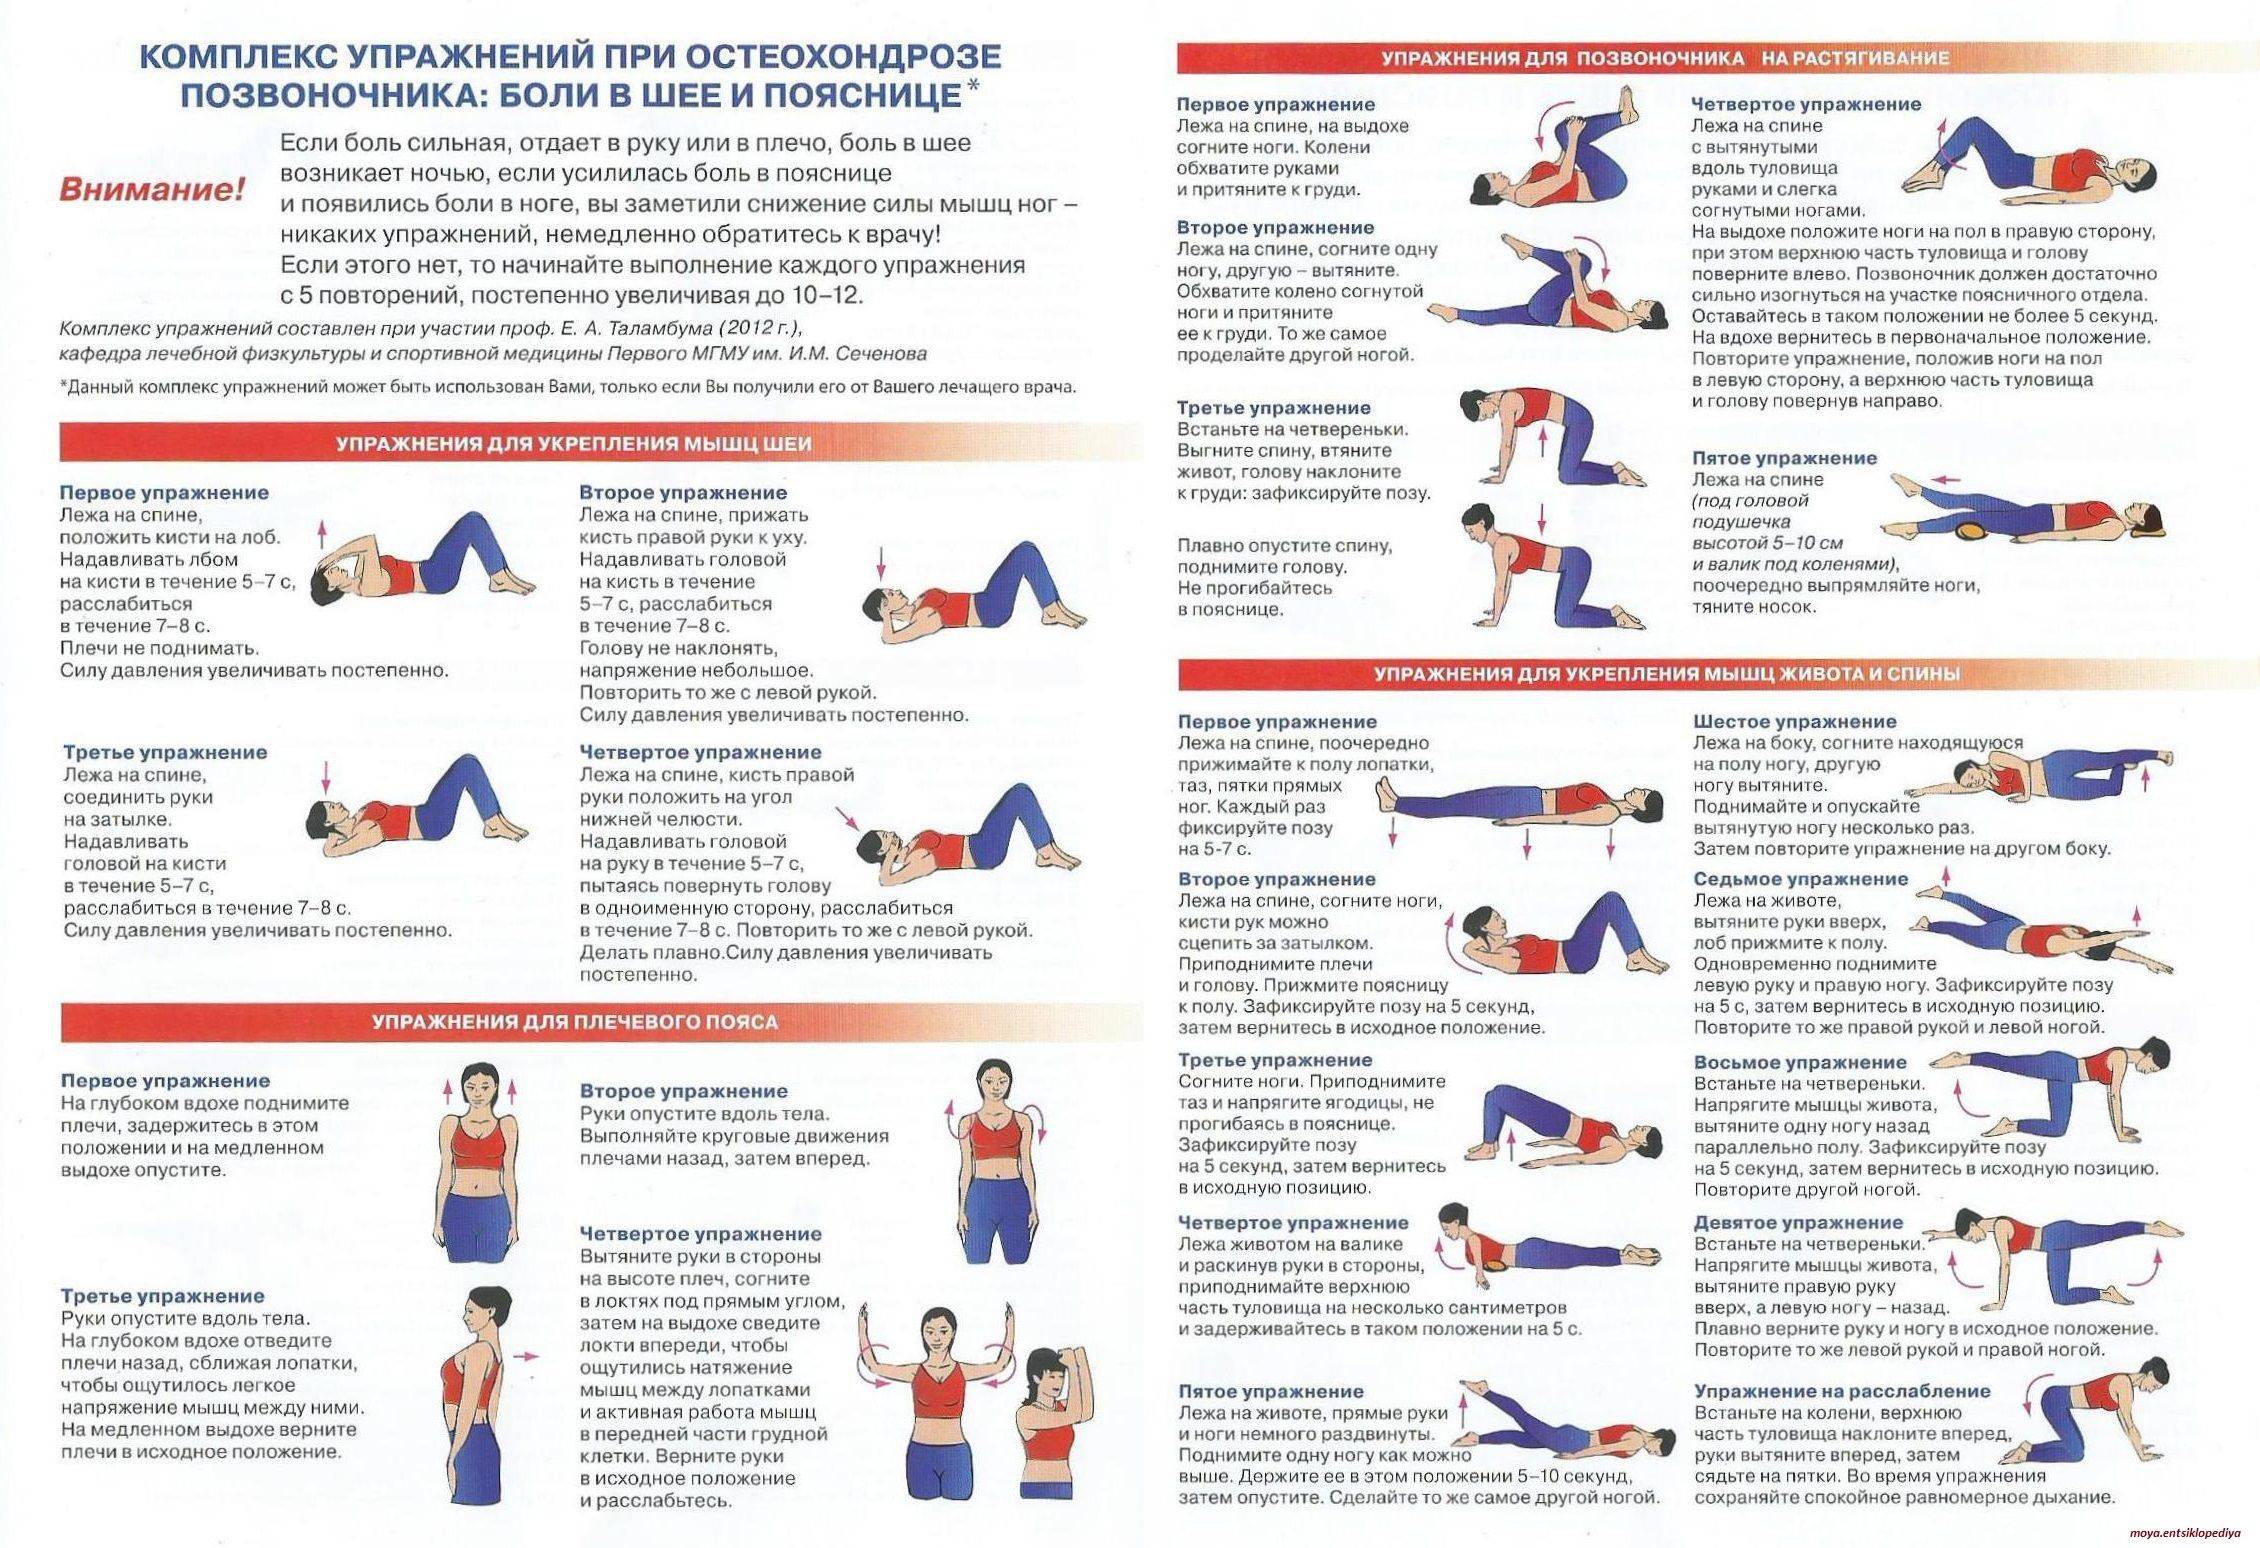 Упражнения для укрепления мышц шеи и подбородка: гимнастика в домашних условиях и зале